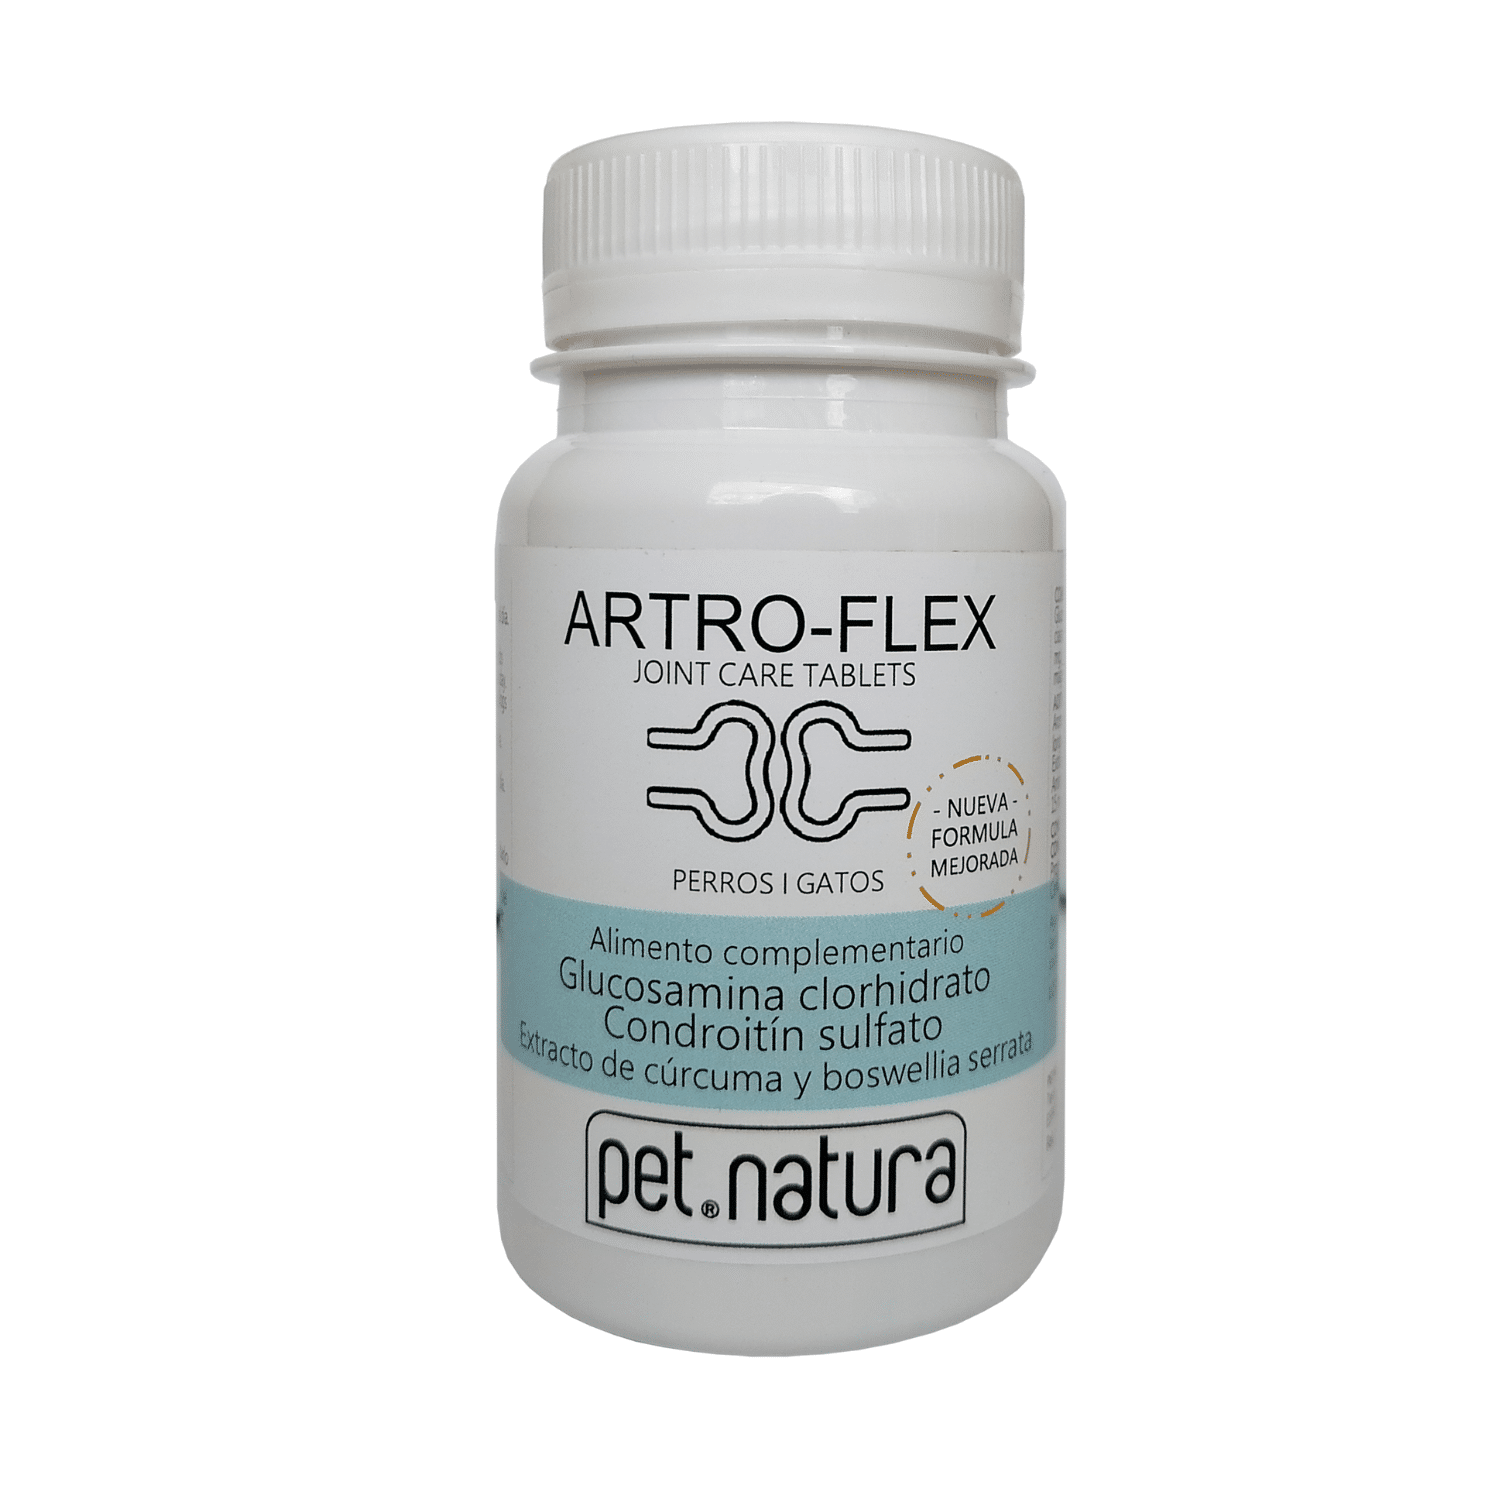 Artroflex es un suplemento nutricional en pastillas recomendado para artrosis u otras lesiones ya existentes articulares en gatos y perros.